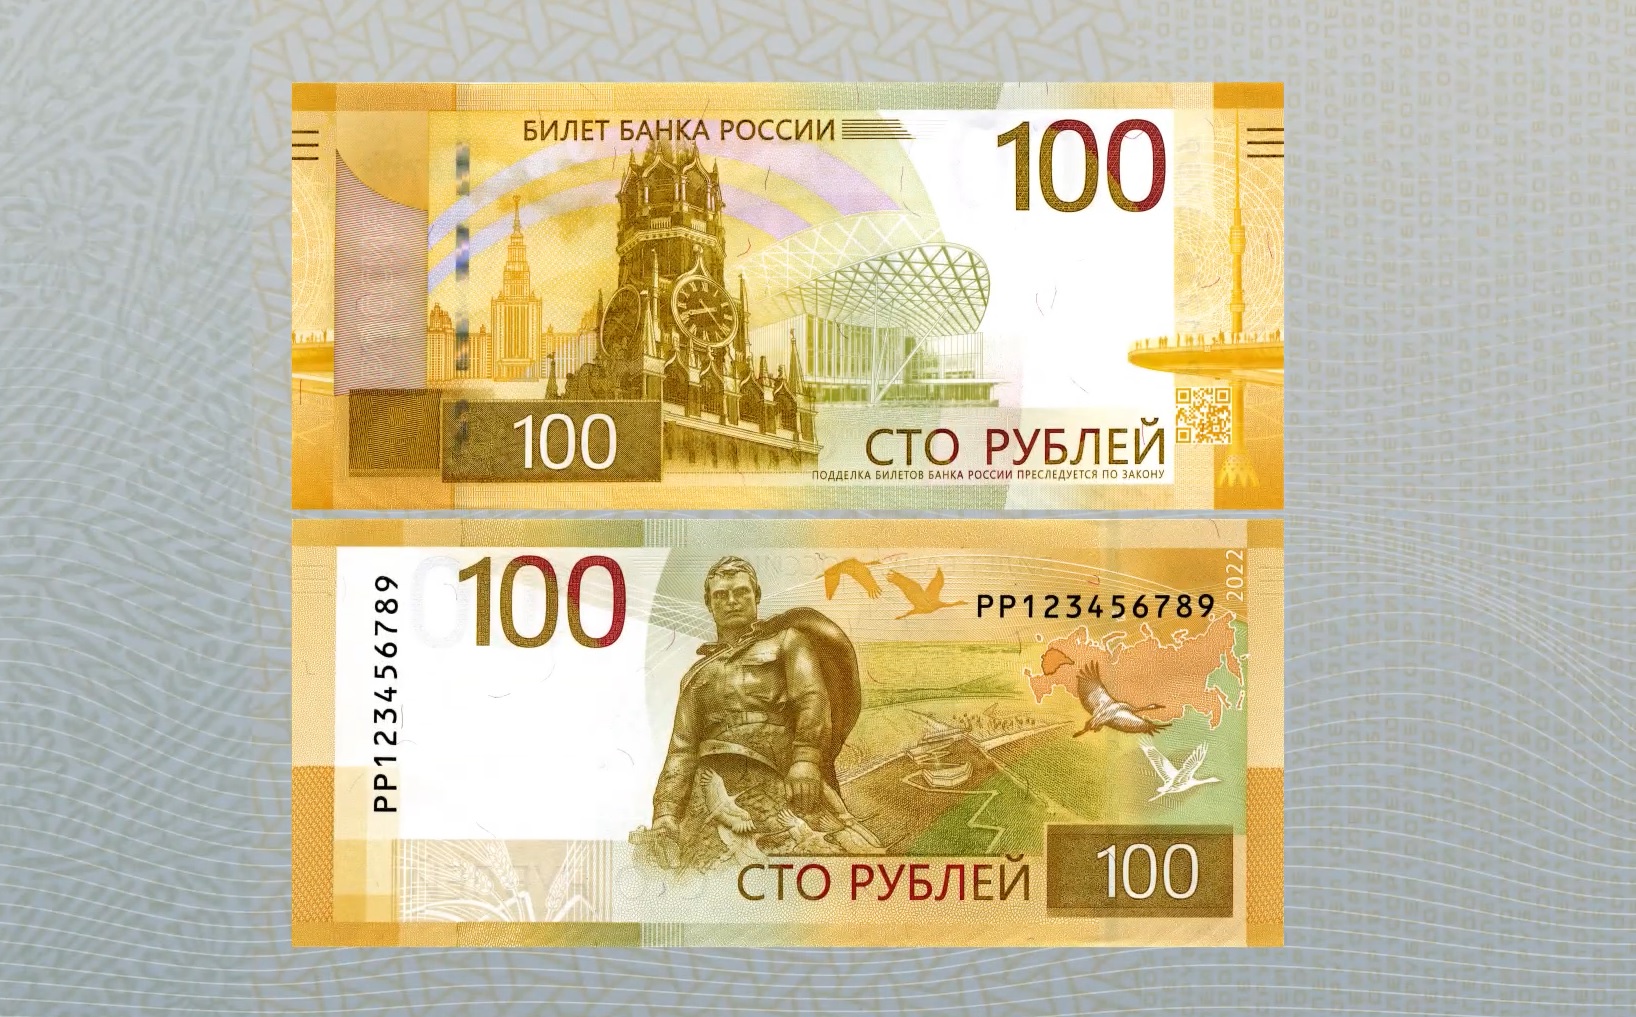 Центробанк презентовал новую 100-рублевую банкноту